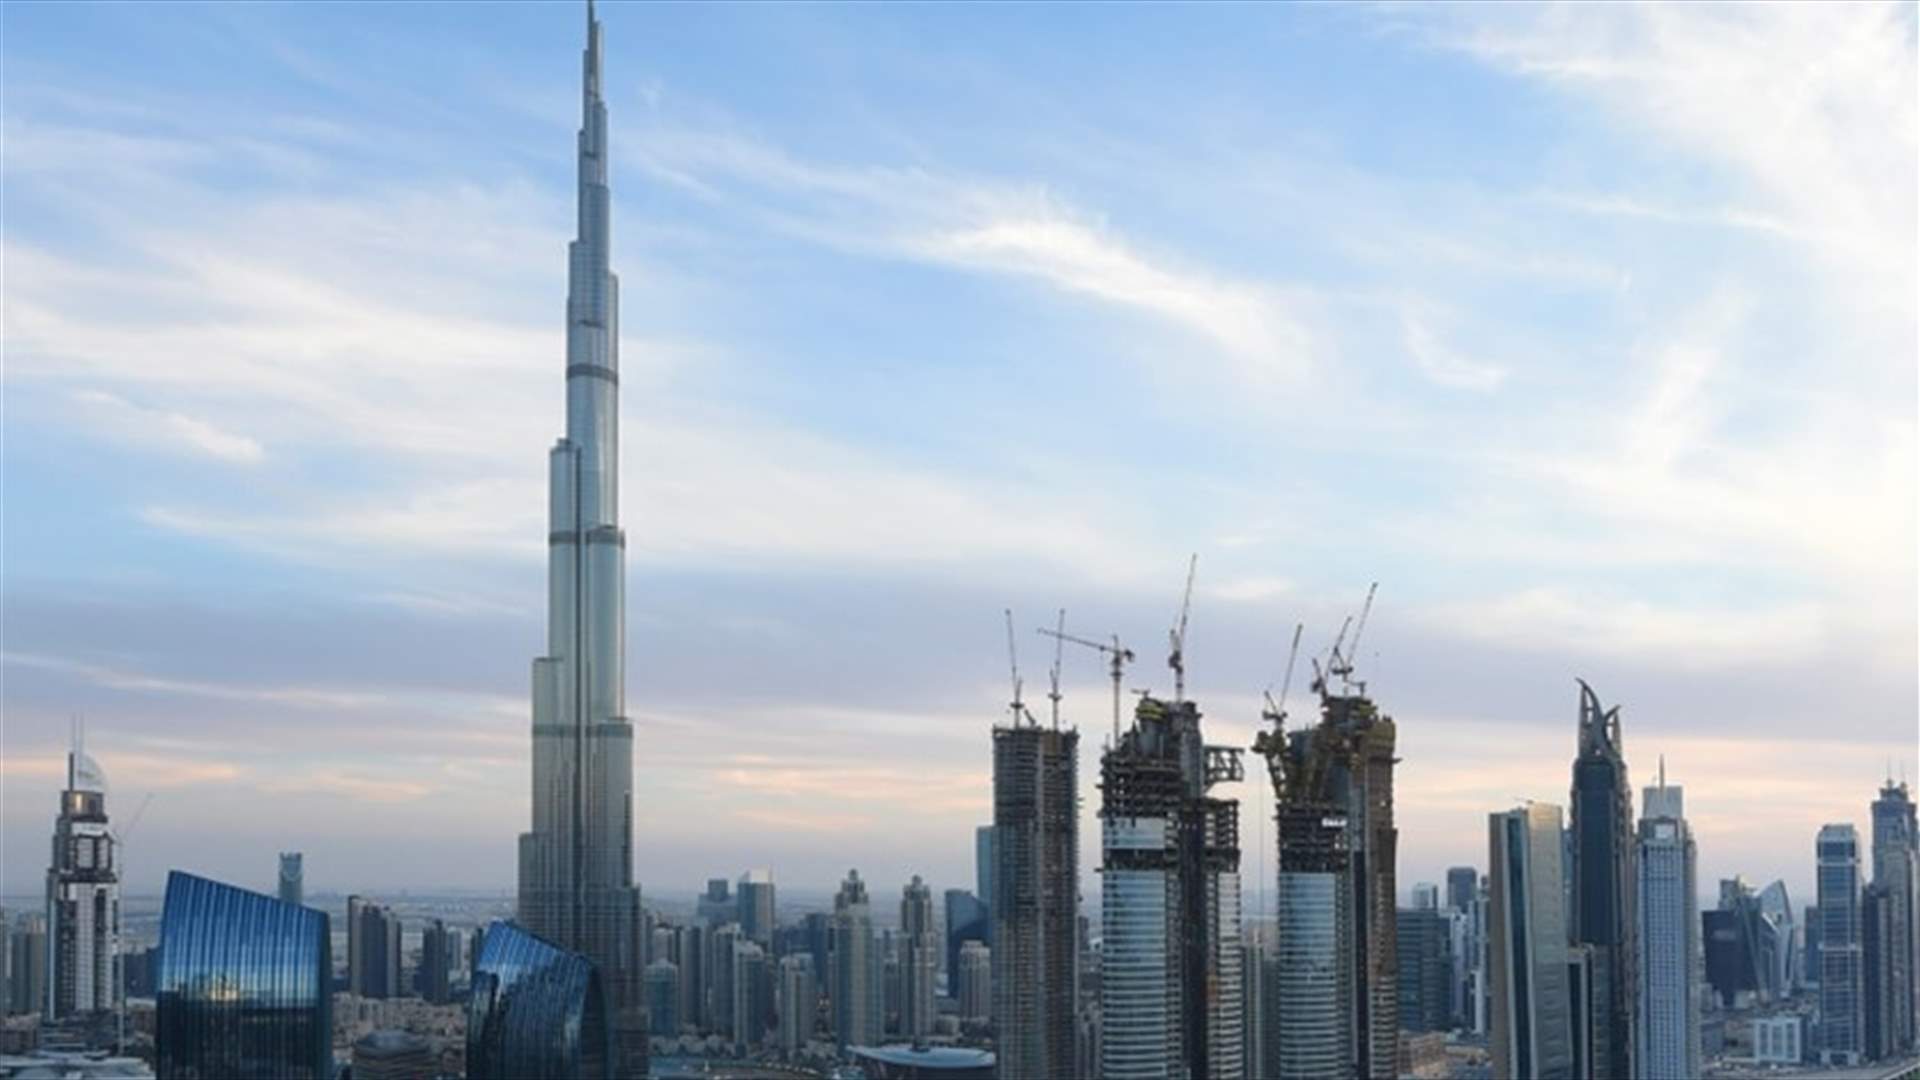 دبي تعلن إعادة فتح مراكز التسوق ومحال العمل الخاصة بشكل كامل الأربعاء